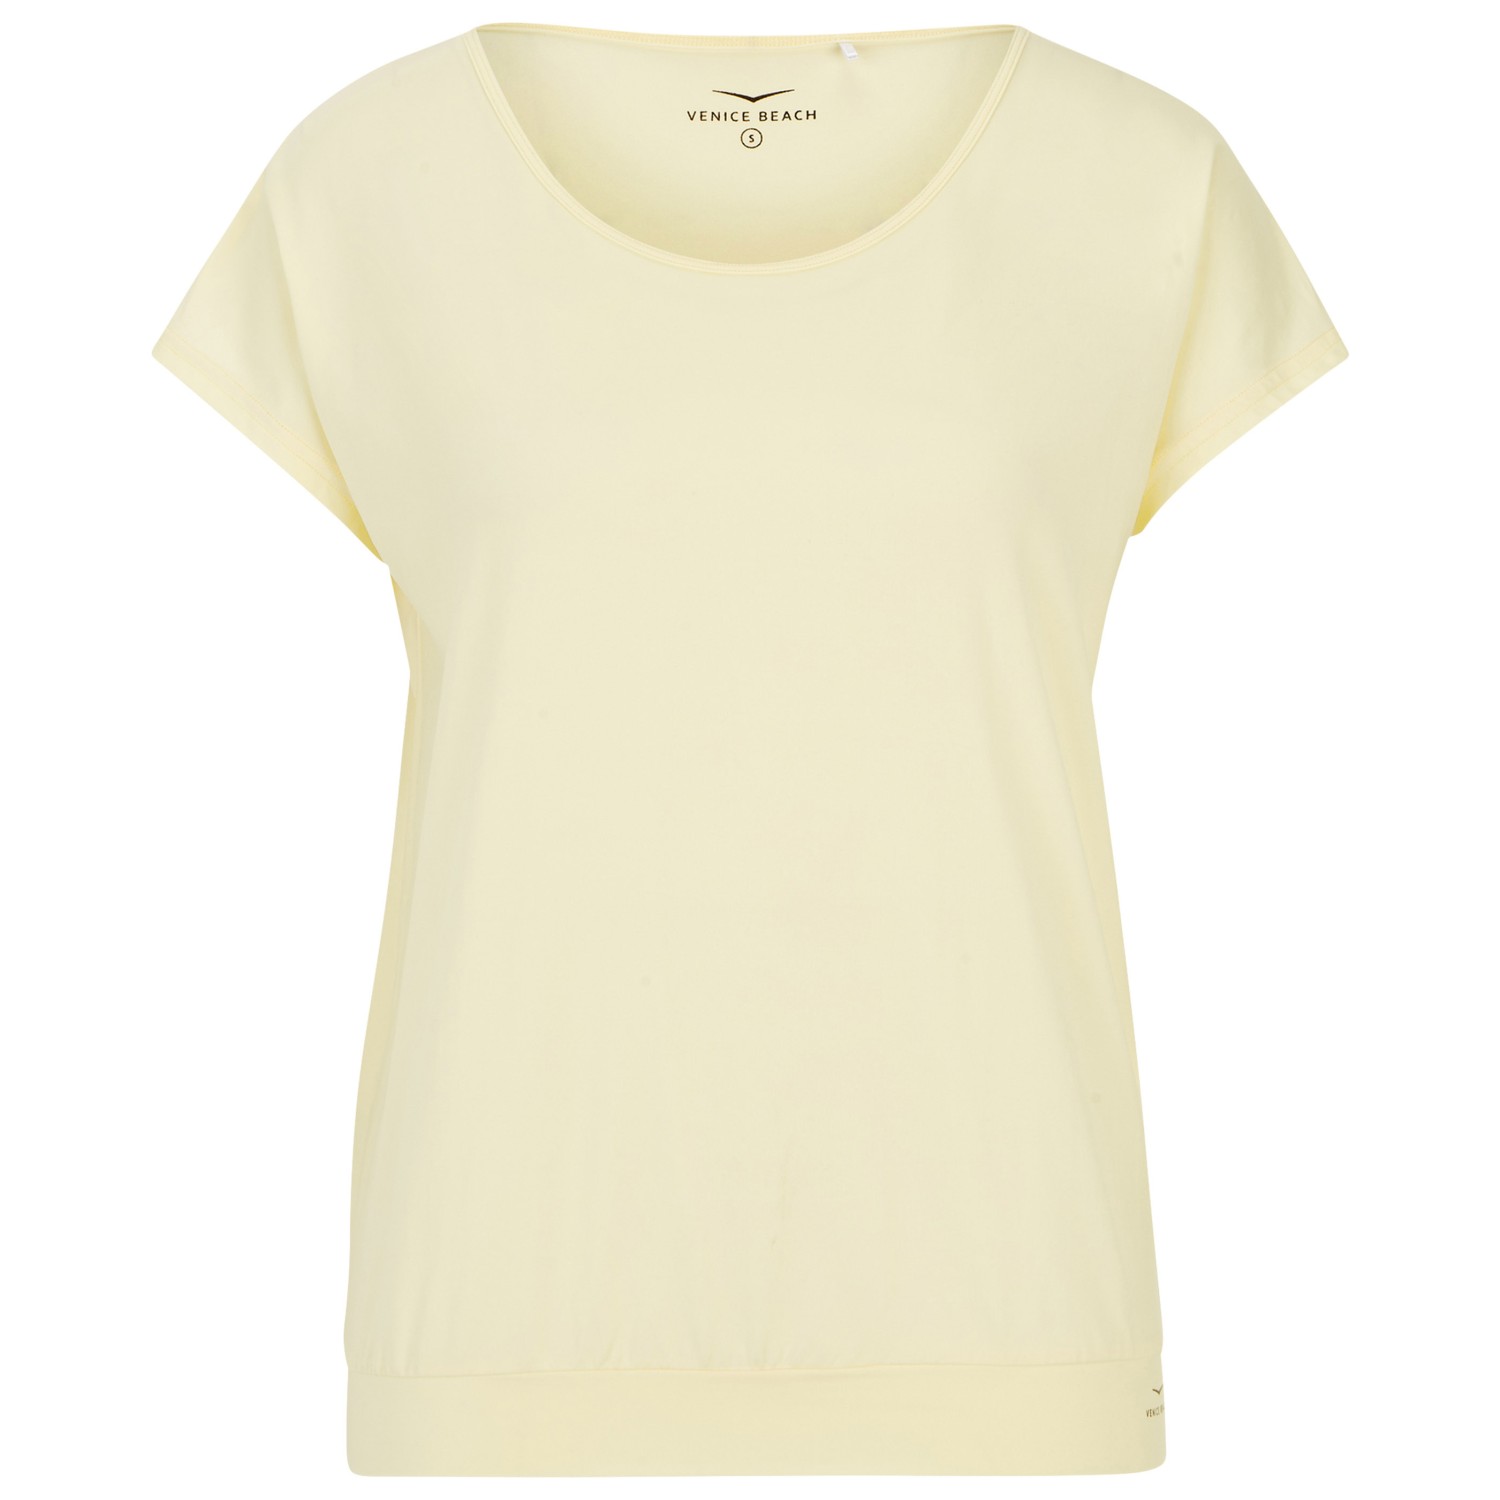 Функциональная рубашка Venice Beach Women's Ryah Drytivity Light T Shirt, цвет Pale Yellow